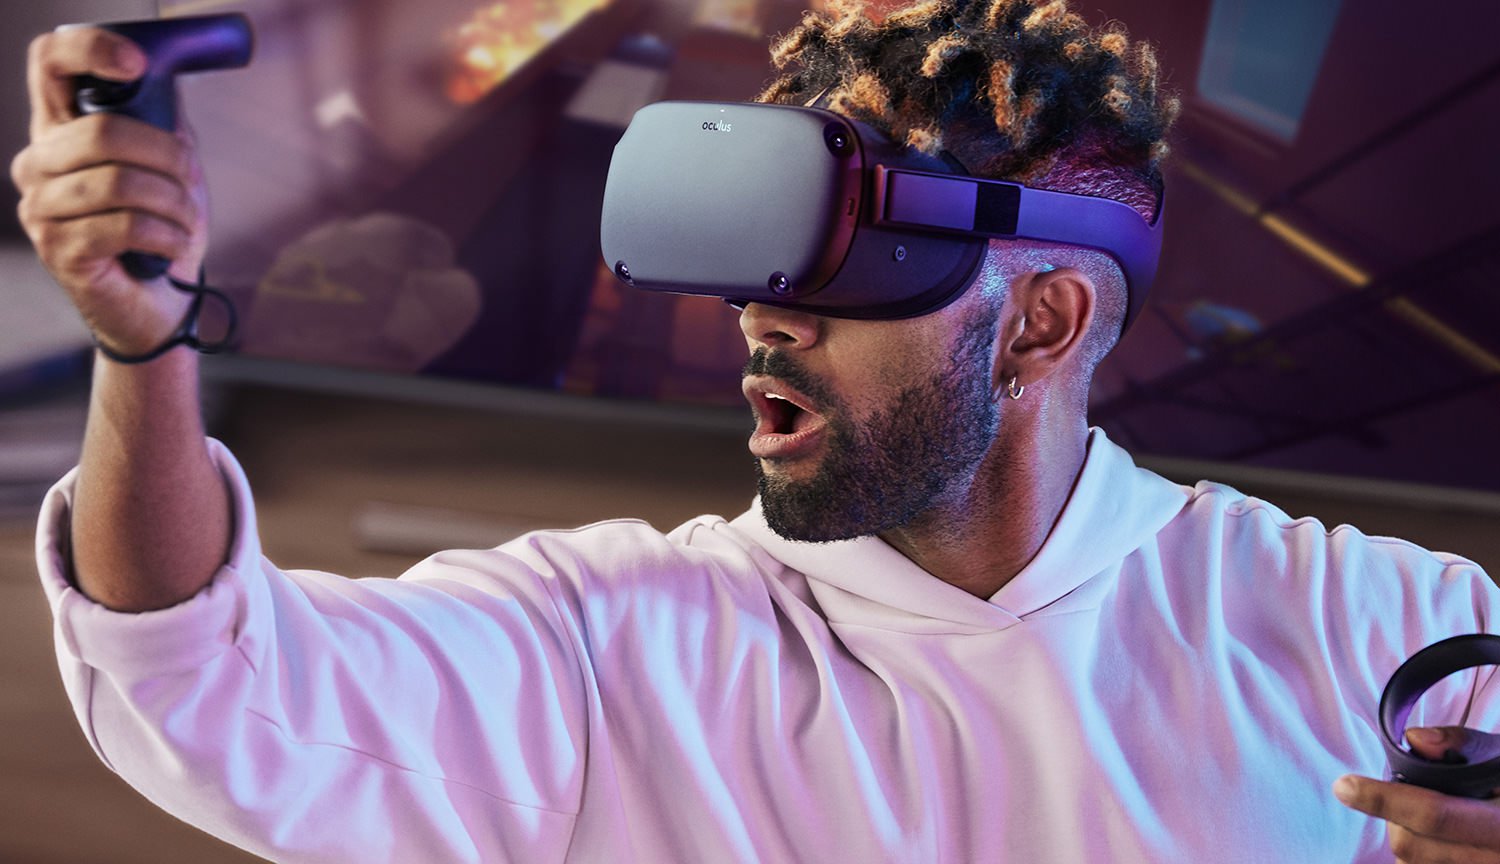 Presentato VR-casco Oculus Quest: senza cavi e con sei gradi di libertà